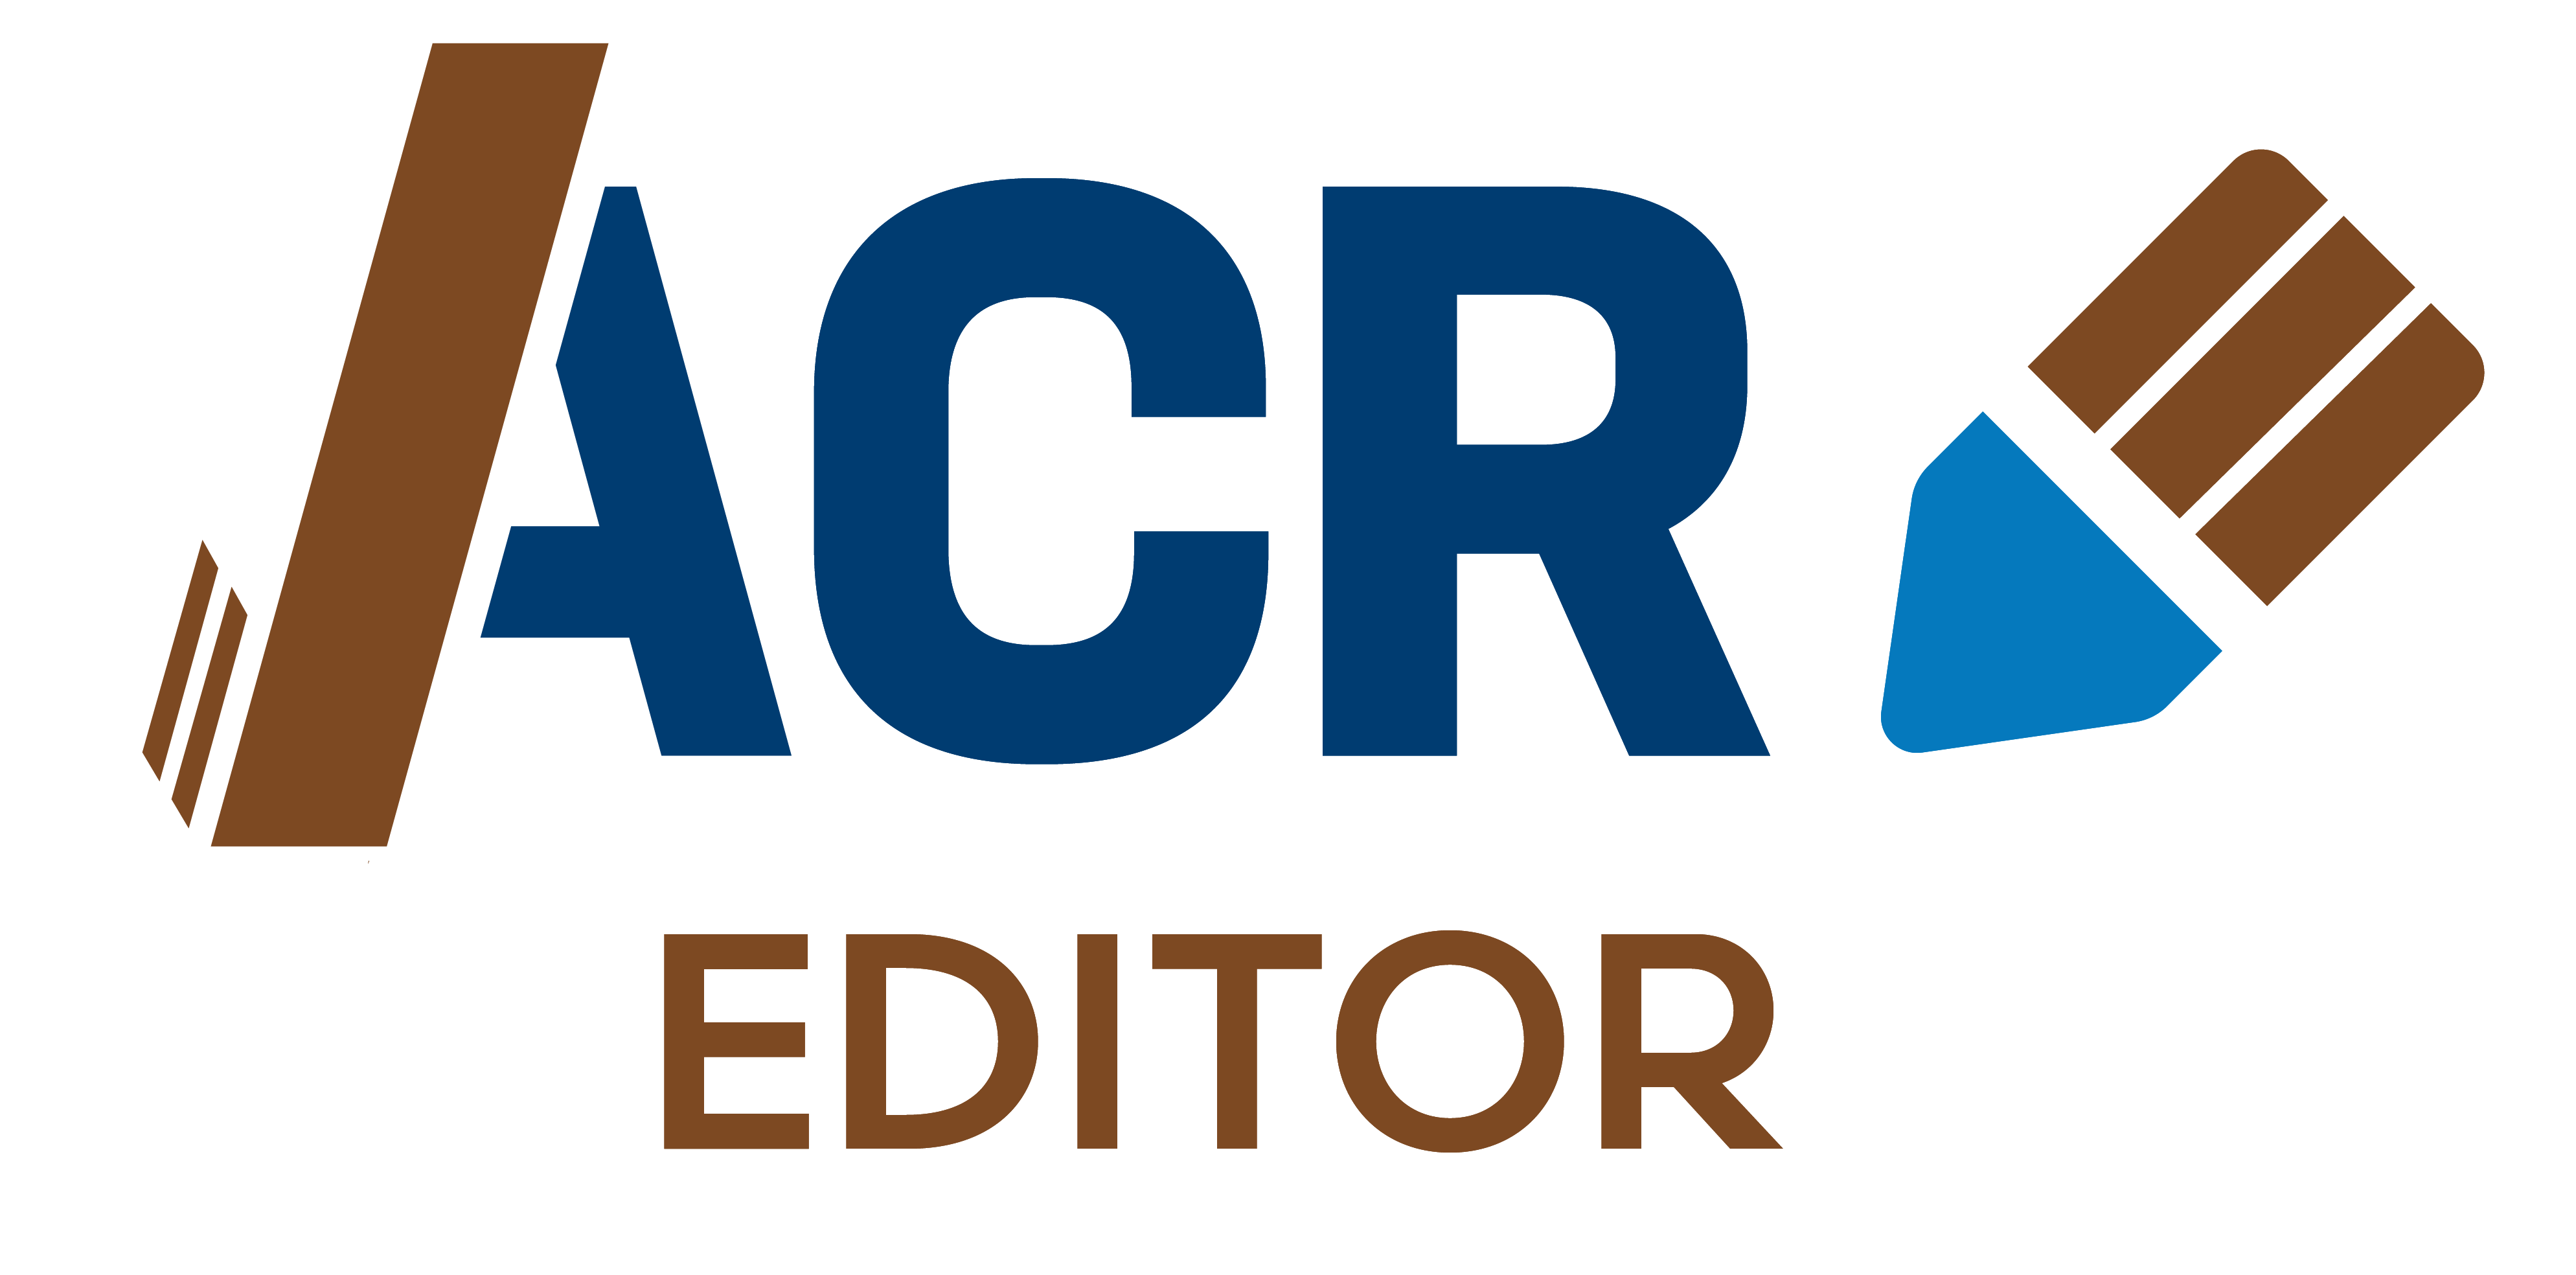 Open ACR Editor logo